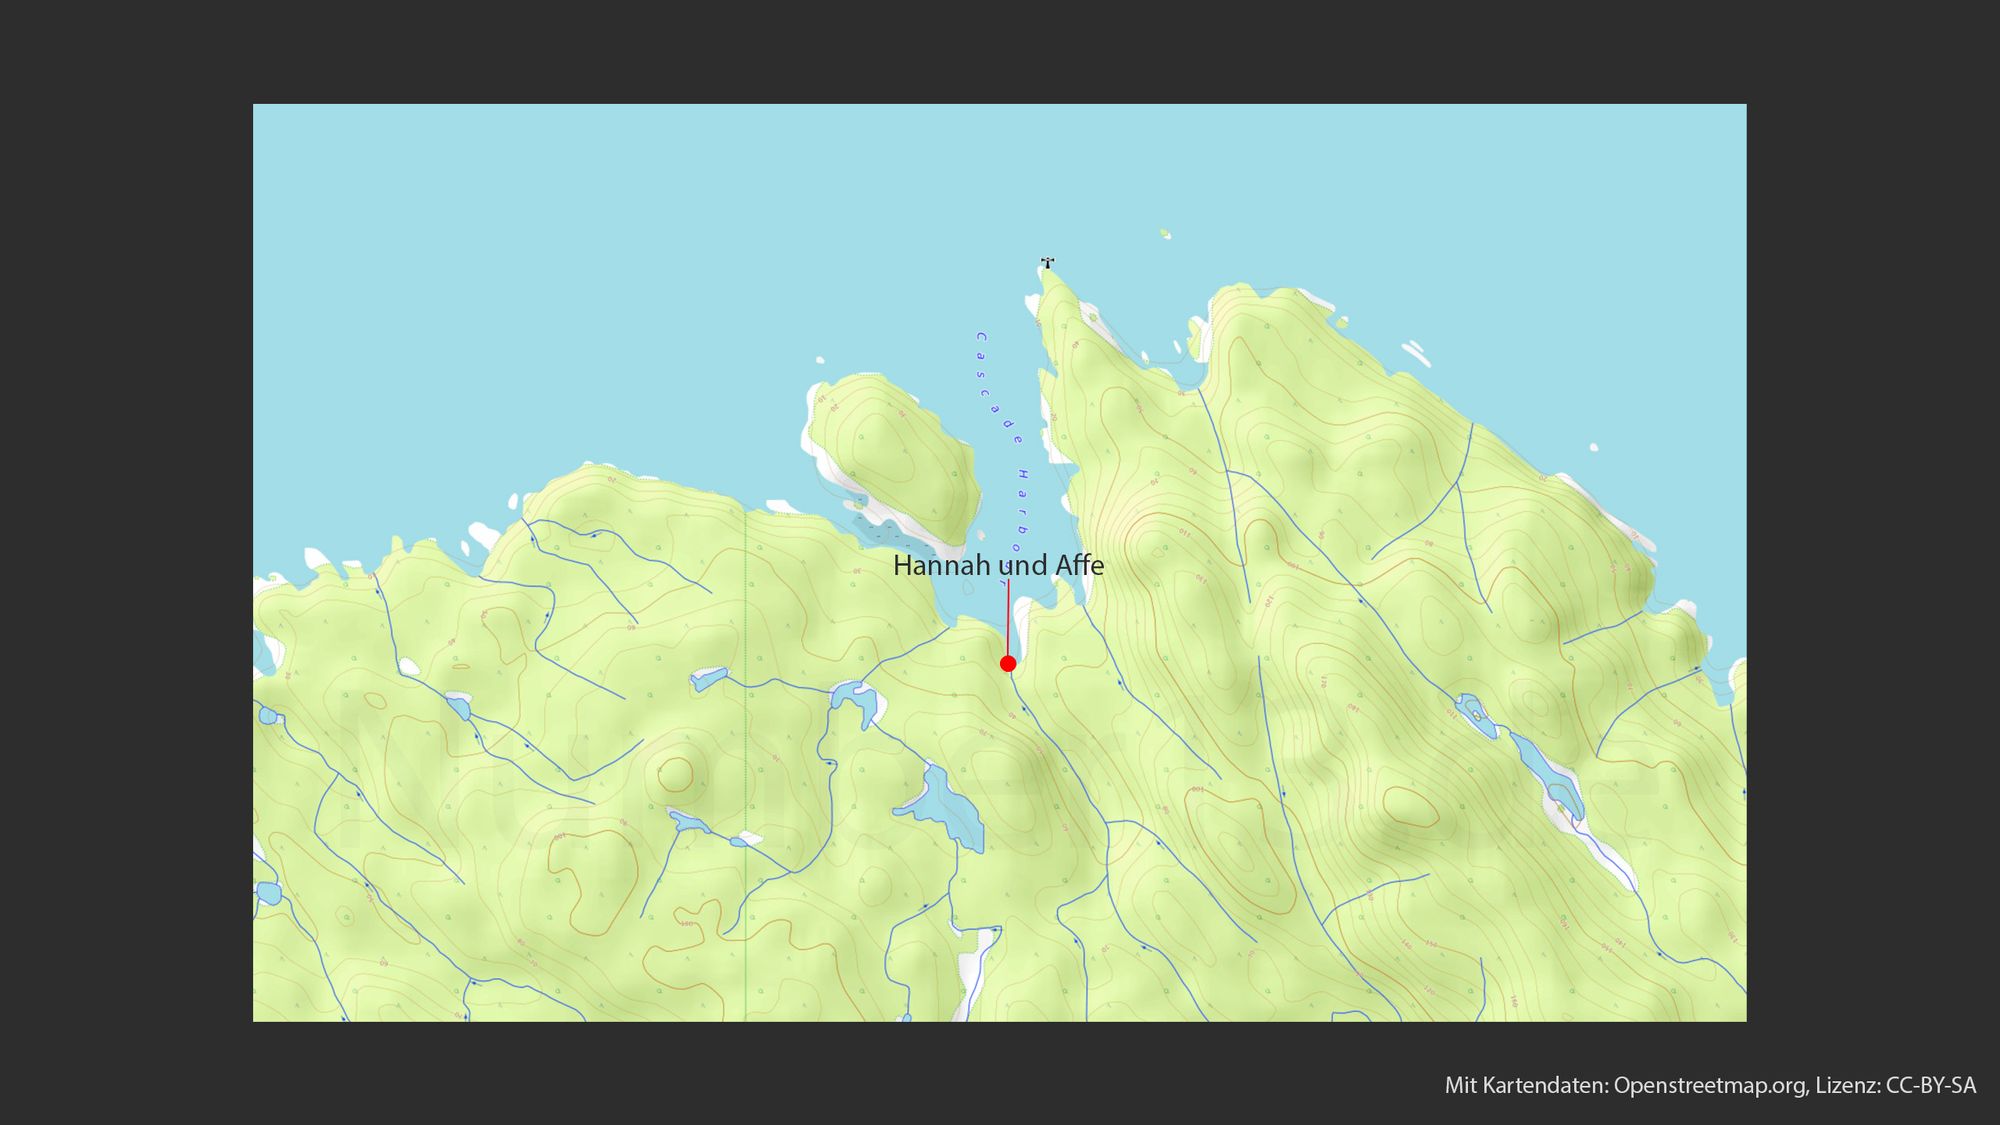 Topografische Karte, die eine hügelige Landschaft mit gelben und grünen Farbtönen darstellt. Ein roter Punkt, markiert mit einem Pfeil, ist beschriftet mit "Hannah und Affe" und positioniert in der Nähe der Küstenlinie. Mehrere blaue Linien, welche Flüsse oder Bäche repräsentieren könnten, sind über das Terrain verteilt. In der unteren Ecke des Bildes befindet sich der Hinweis "Mit Kartendaten: Openstreetmap.org, Lizenz: CC-BY-SA